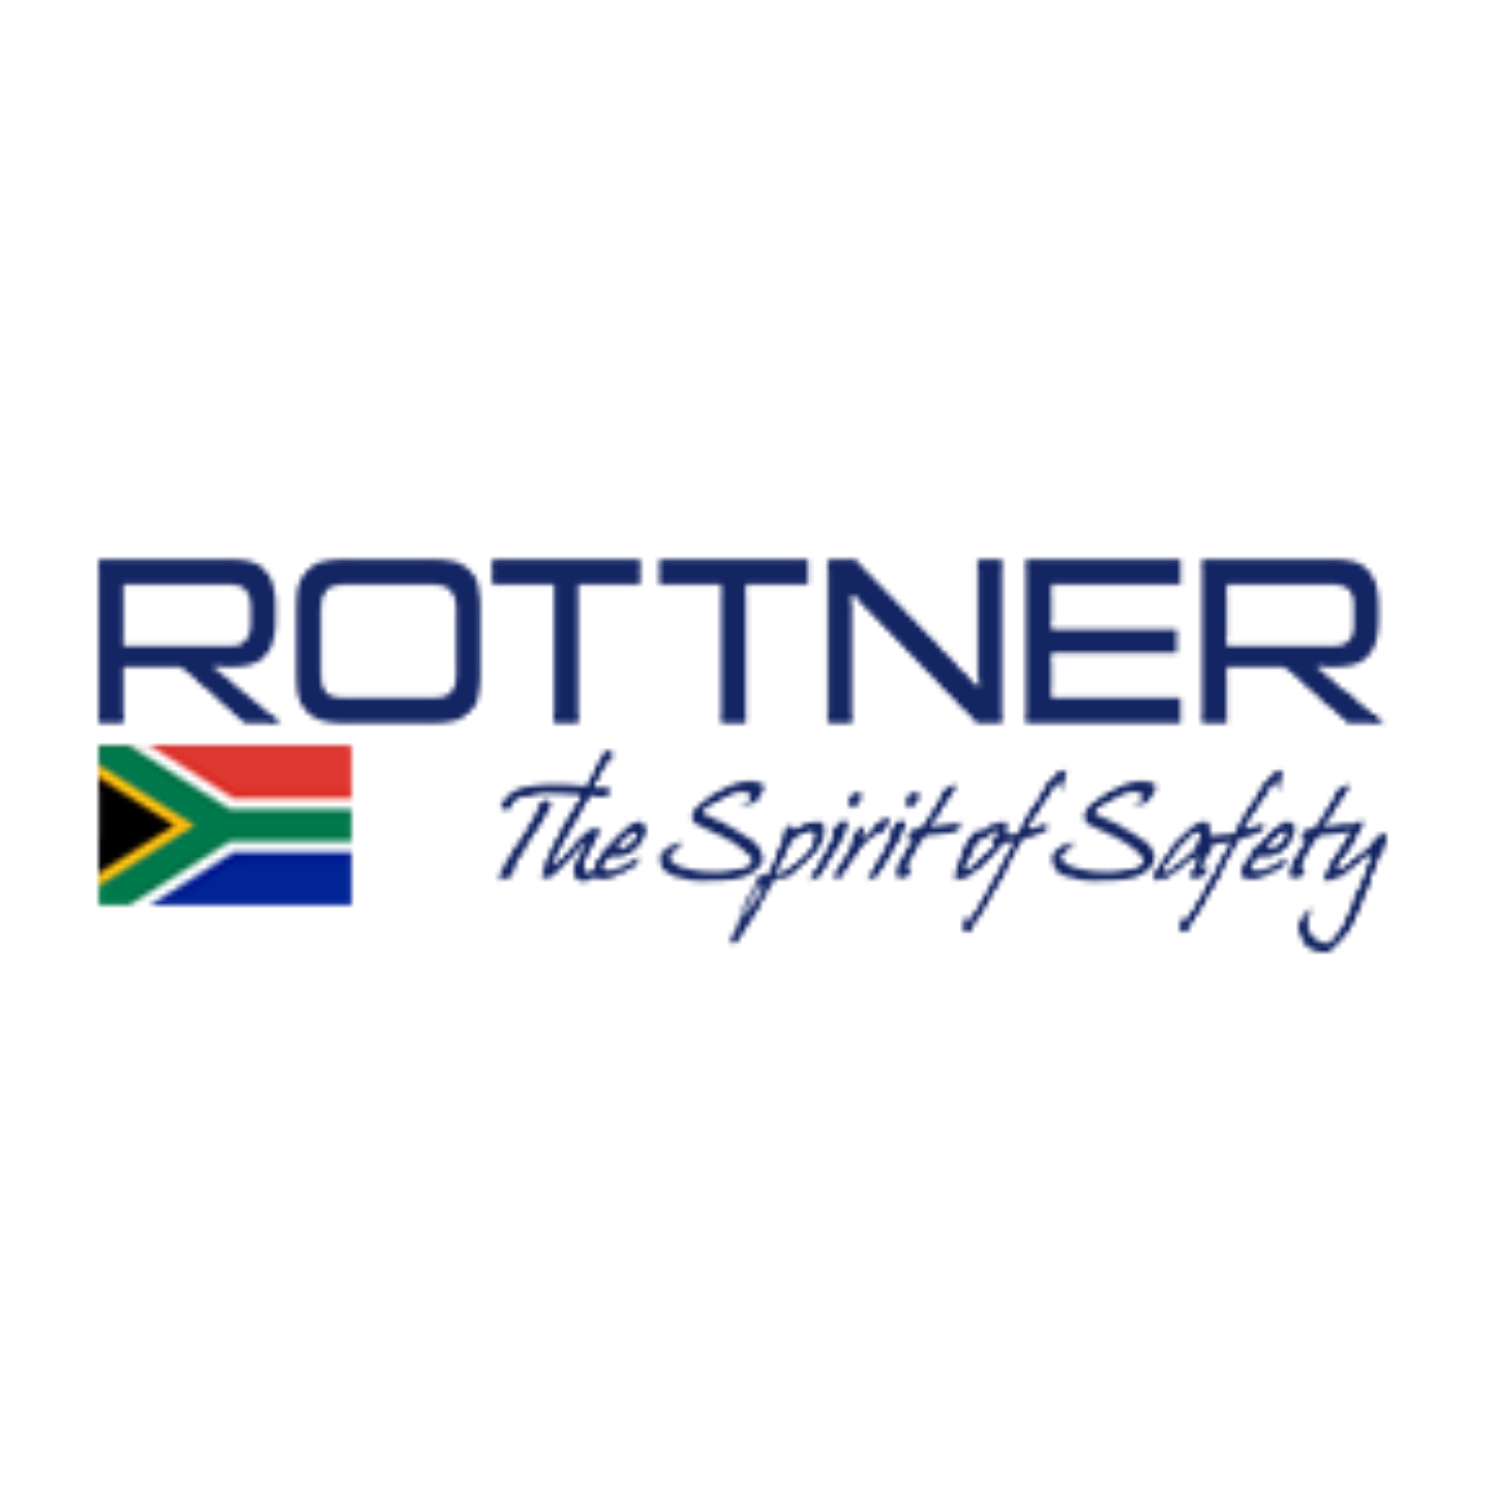 Rottner Security_WCG-Sponsor.png